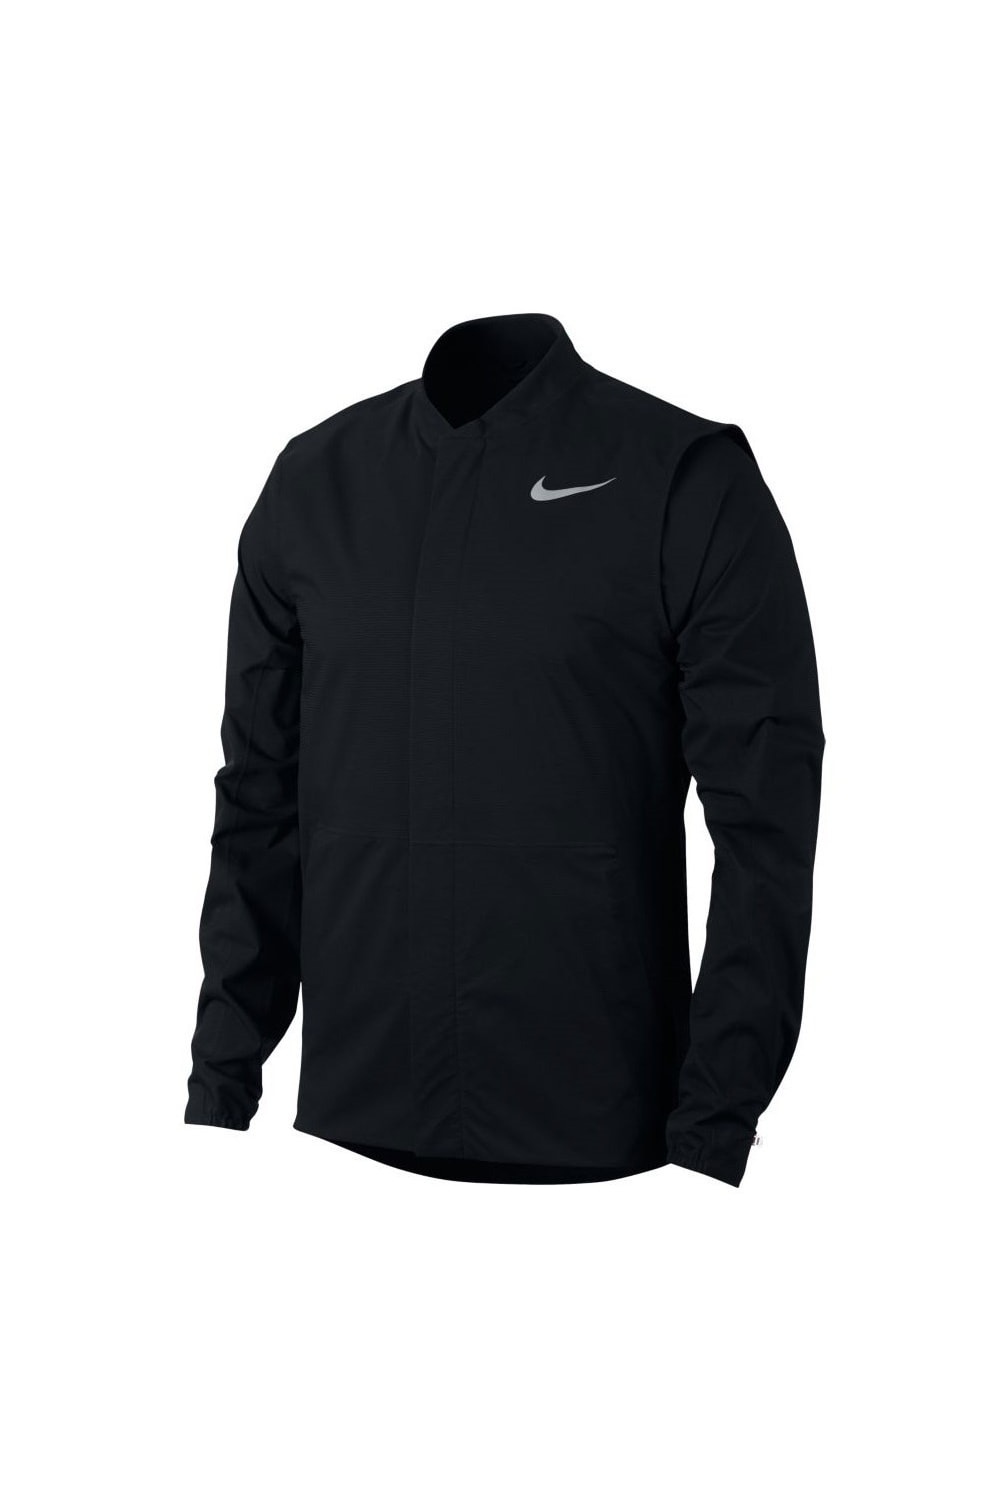 Nike Mens Hypershield Waterproof Jacket (Black)